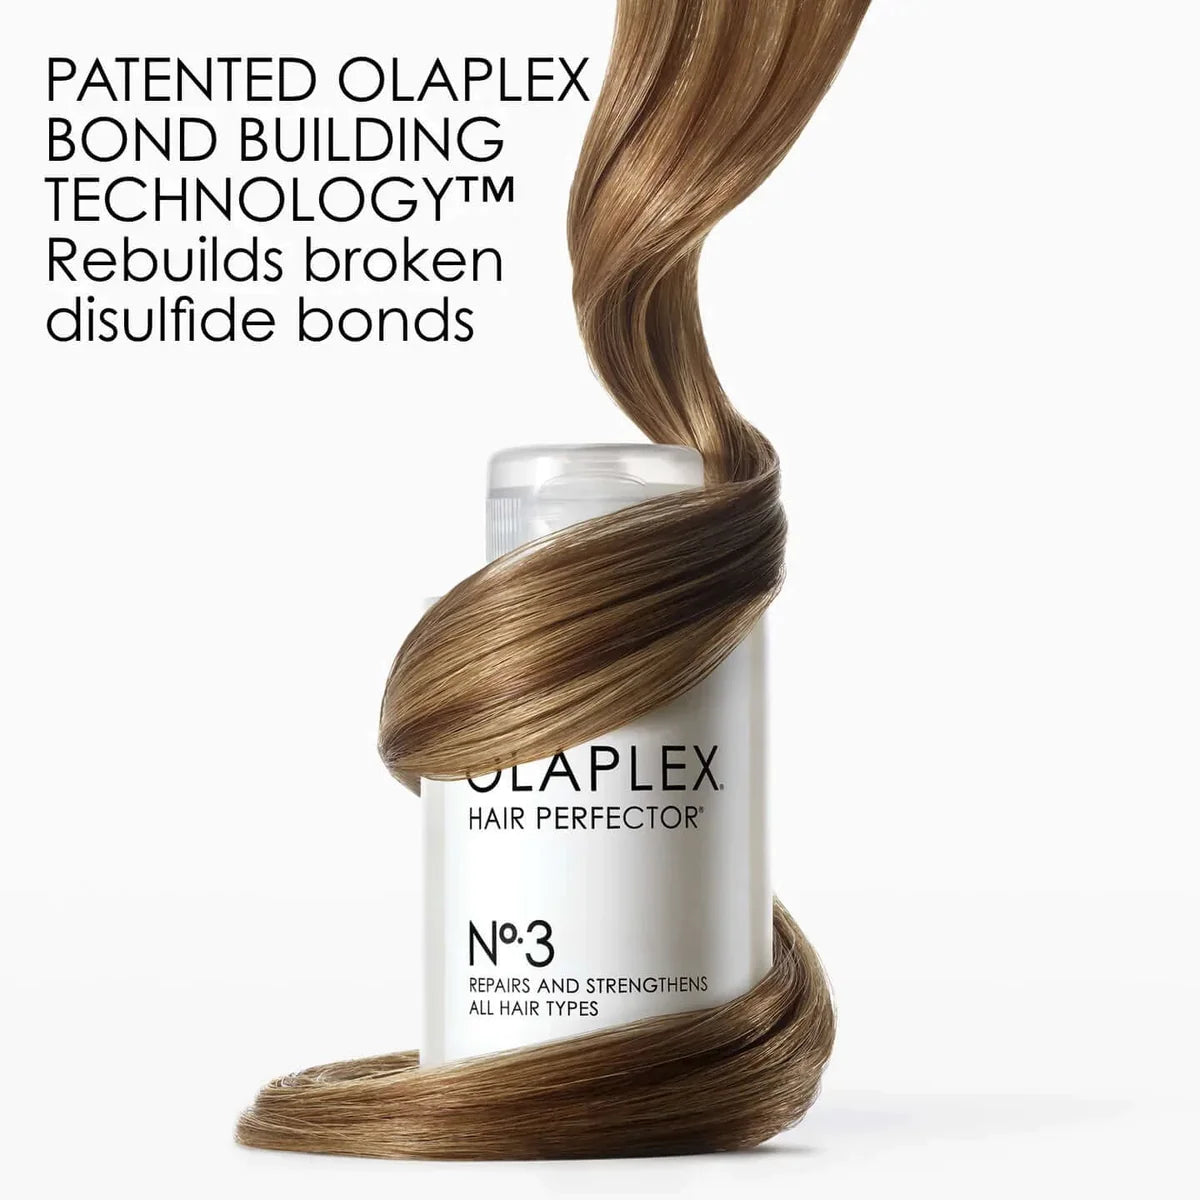 Elixir for hair "Hair perfector" by Olaplex (Olaplex Hair Protector №.3)